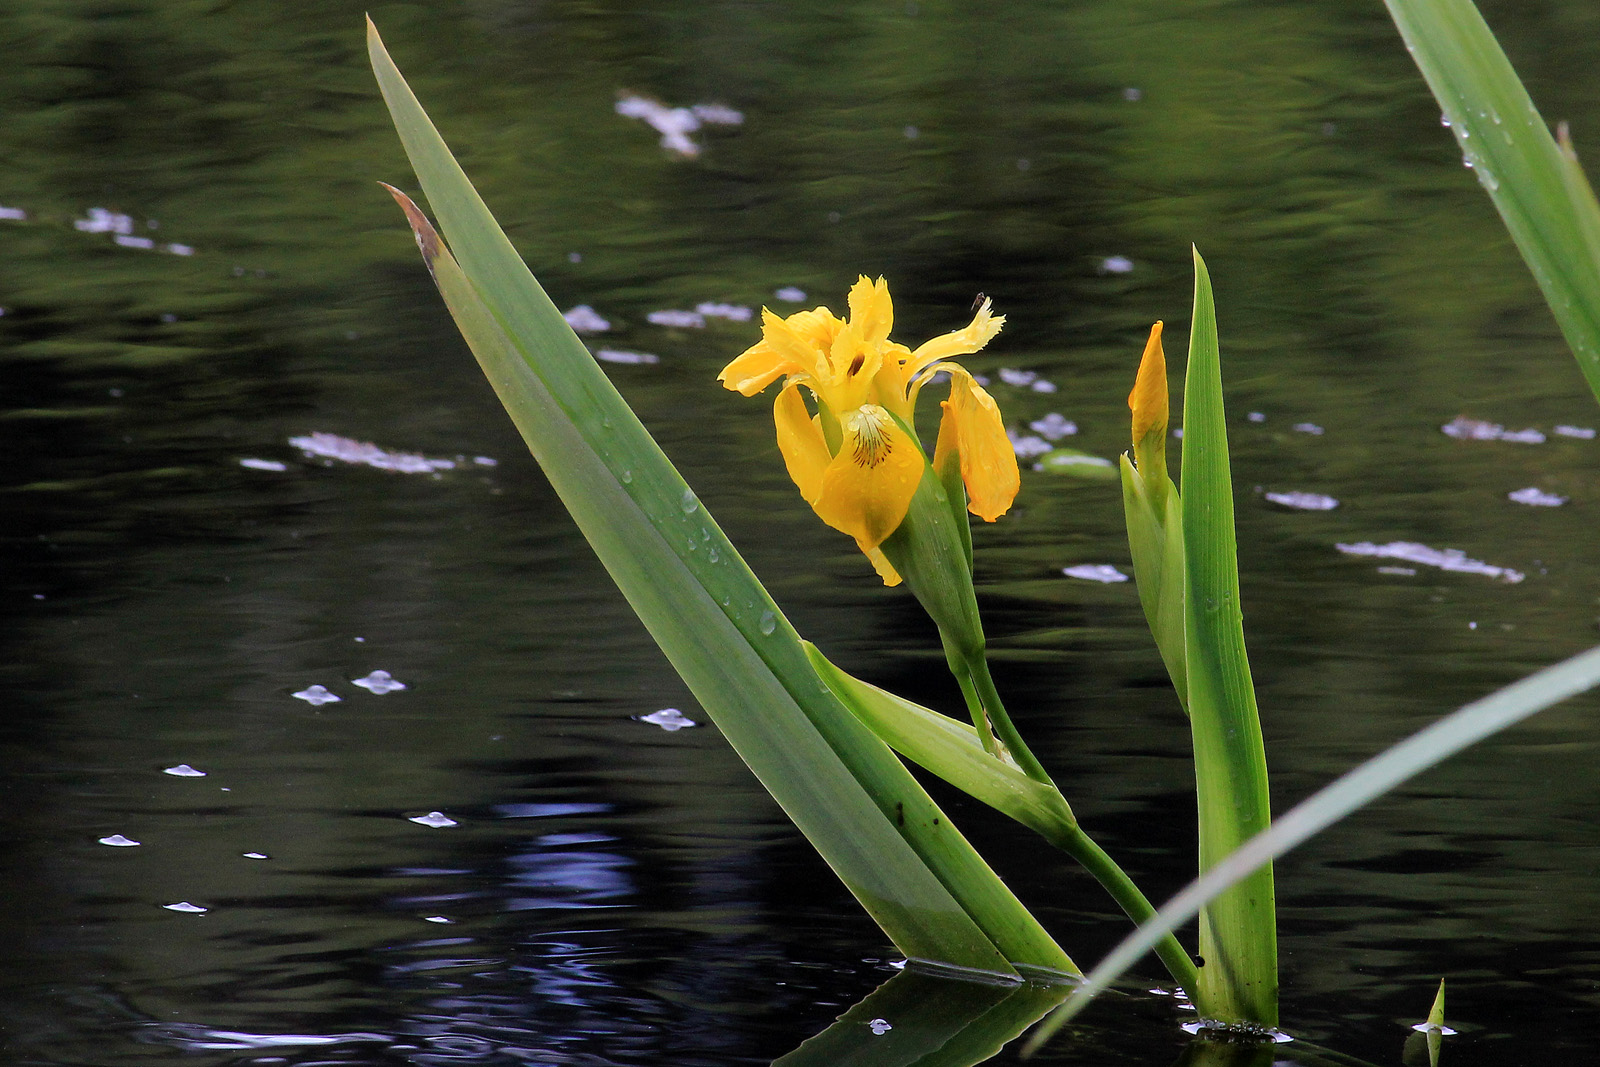 Iris pseudacorus L.